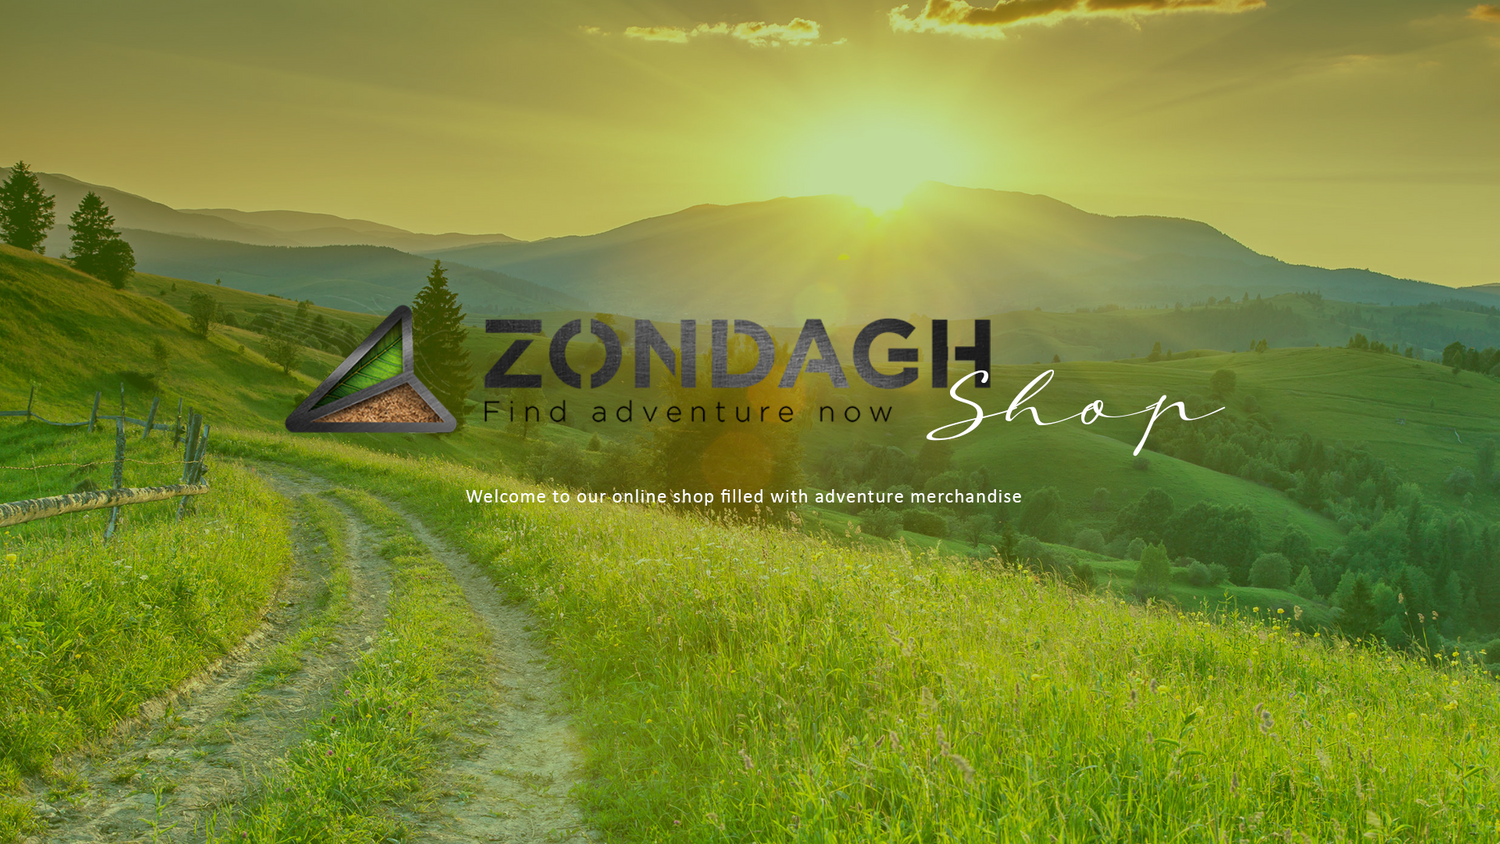 Zondagh Find Adventure Now Shop